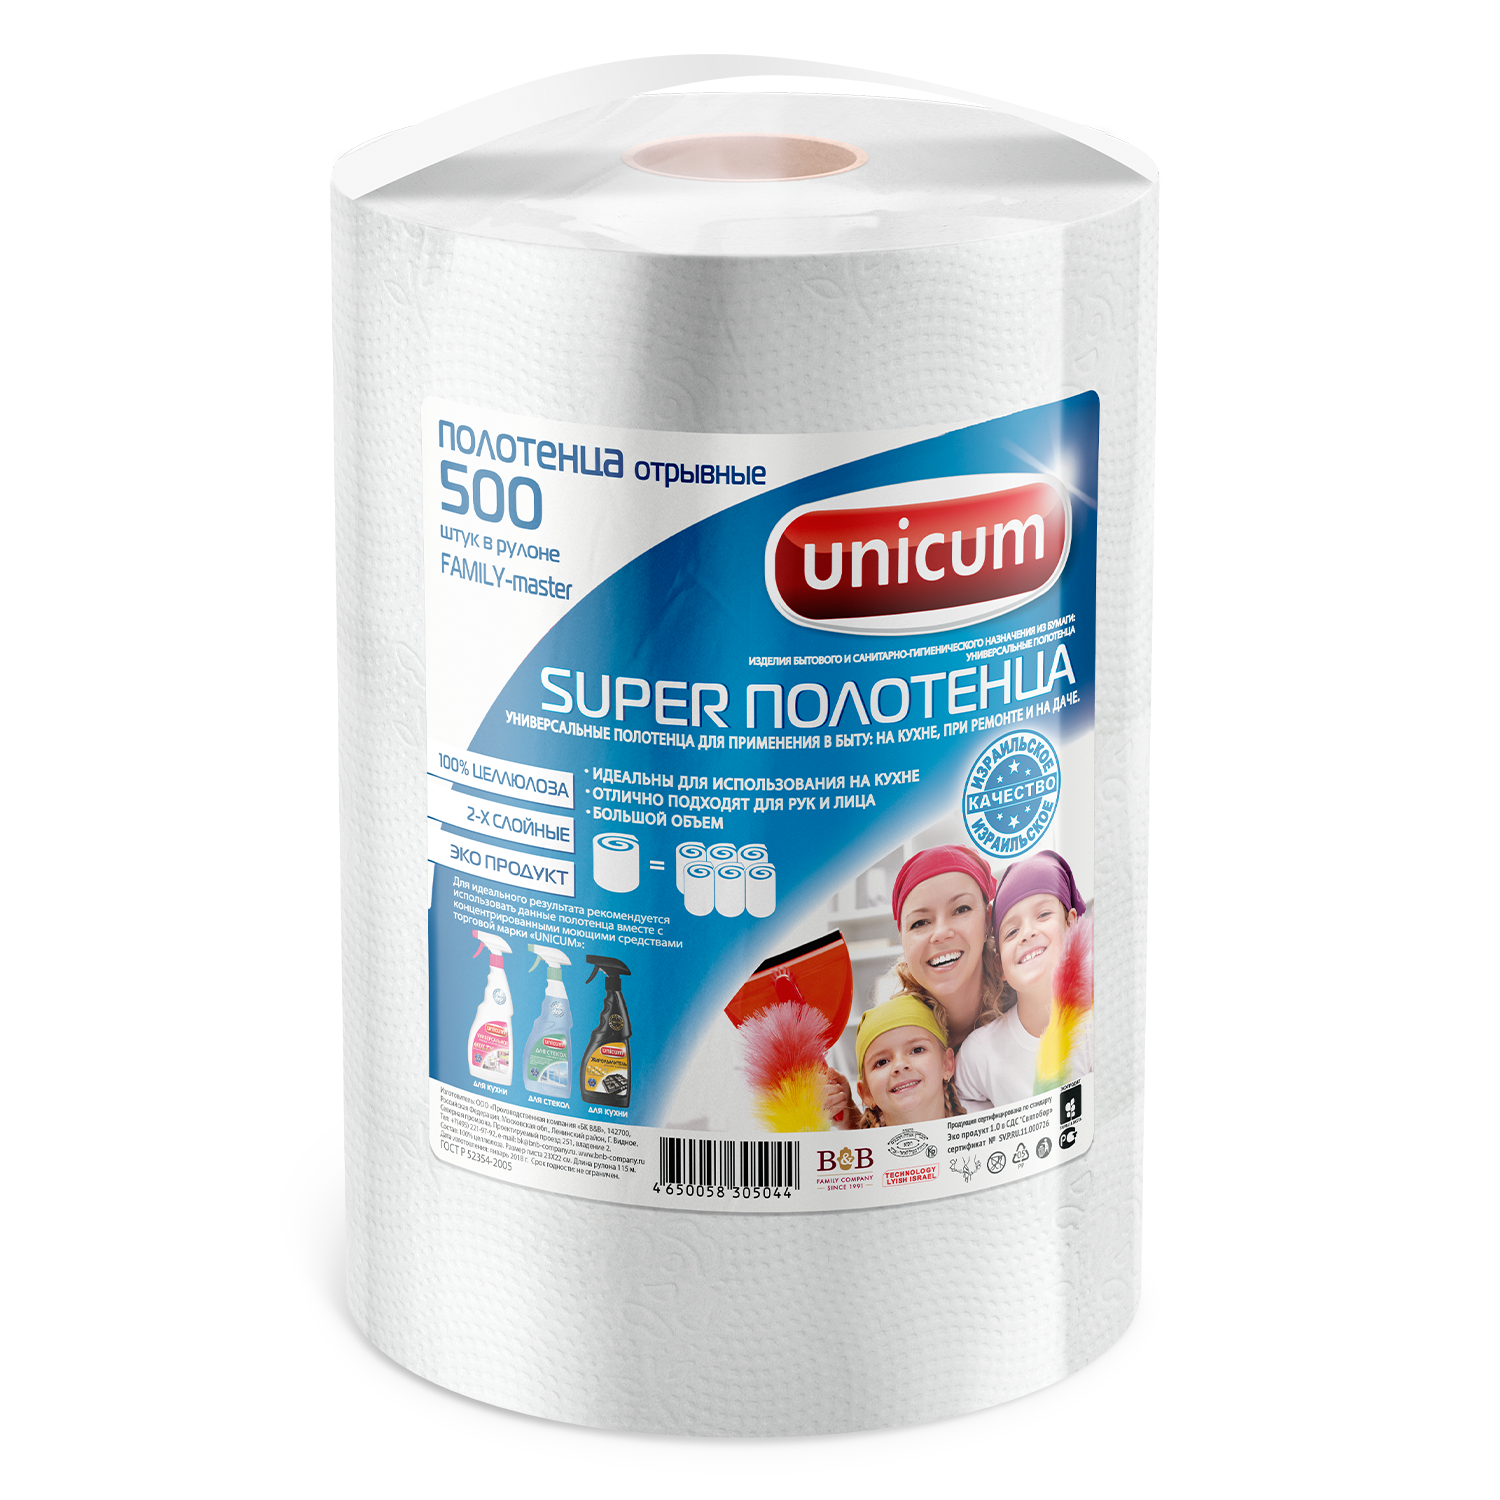 Полотенца отрывные UNICUM Family-master 500 шт в рулоне - фото 1